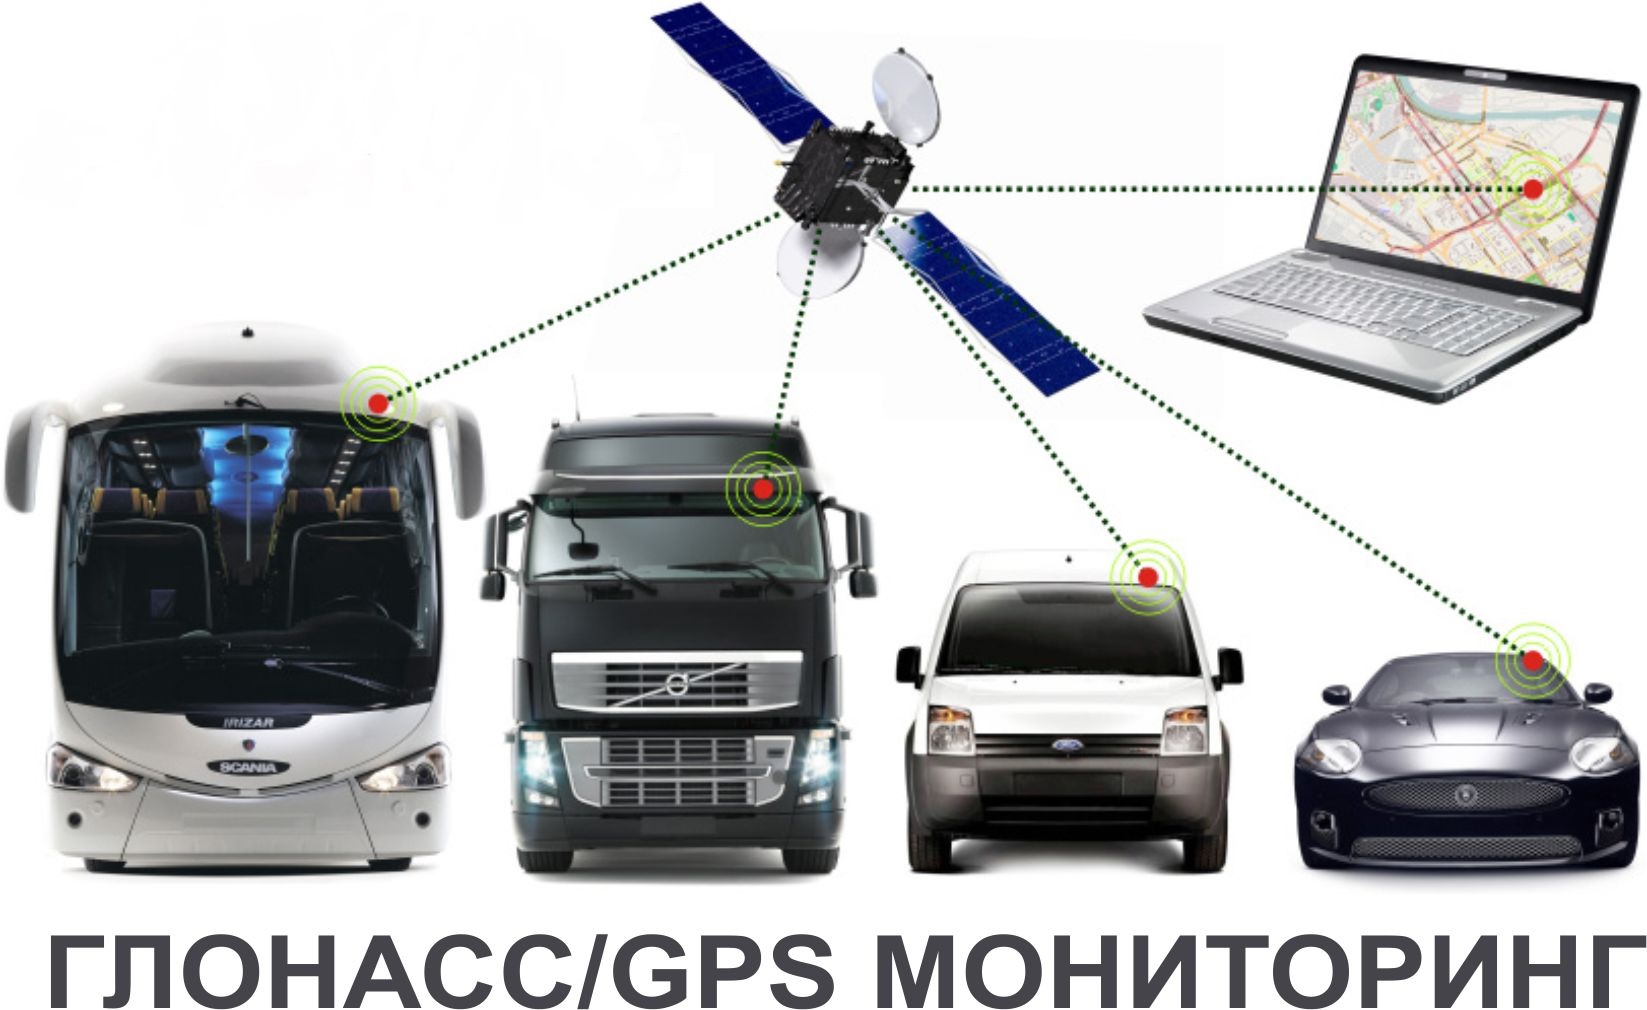 Слежение за машиной. Спутниковая система ГЛОНАСС/GPS. Система ГЛОНАСС/GPS мониторинга. Система мониторинга транспорта GPS ГЛОНАСС. Системы спутникового мониторинга ГЛОНАСС.